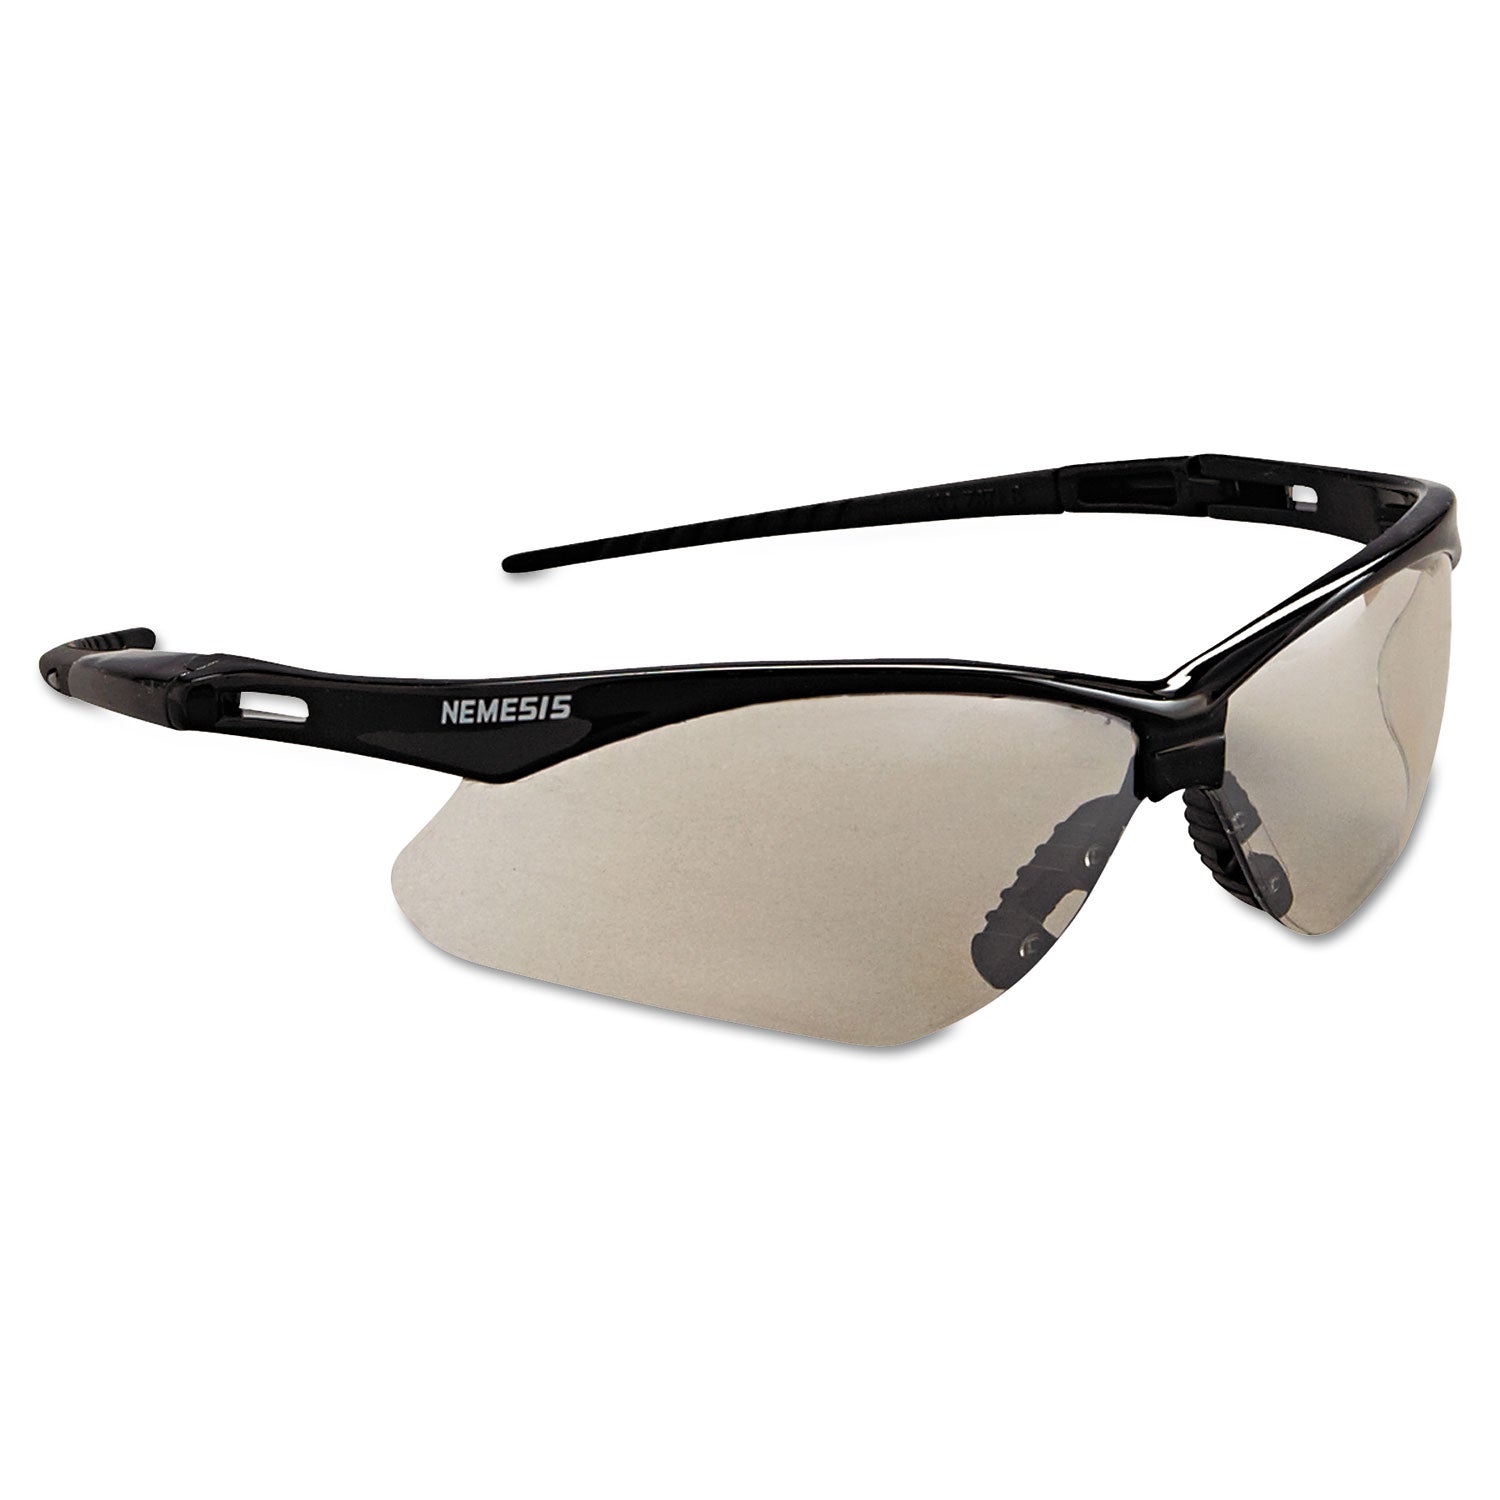 nemesis-safety-glasses-black-frame-indoor-outdoor-lens_kcc25685 - 2